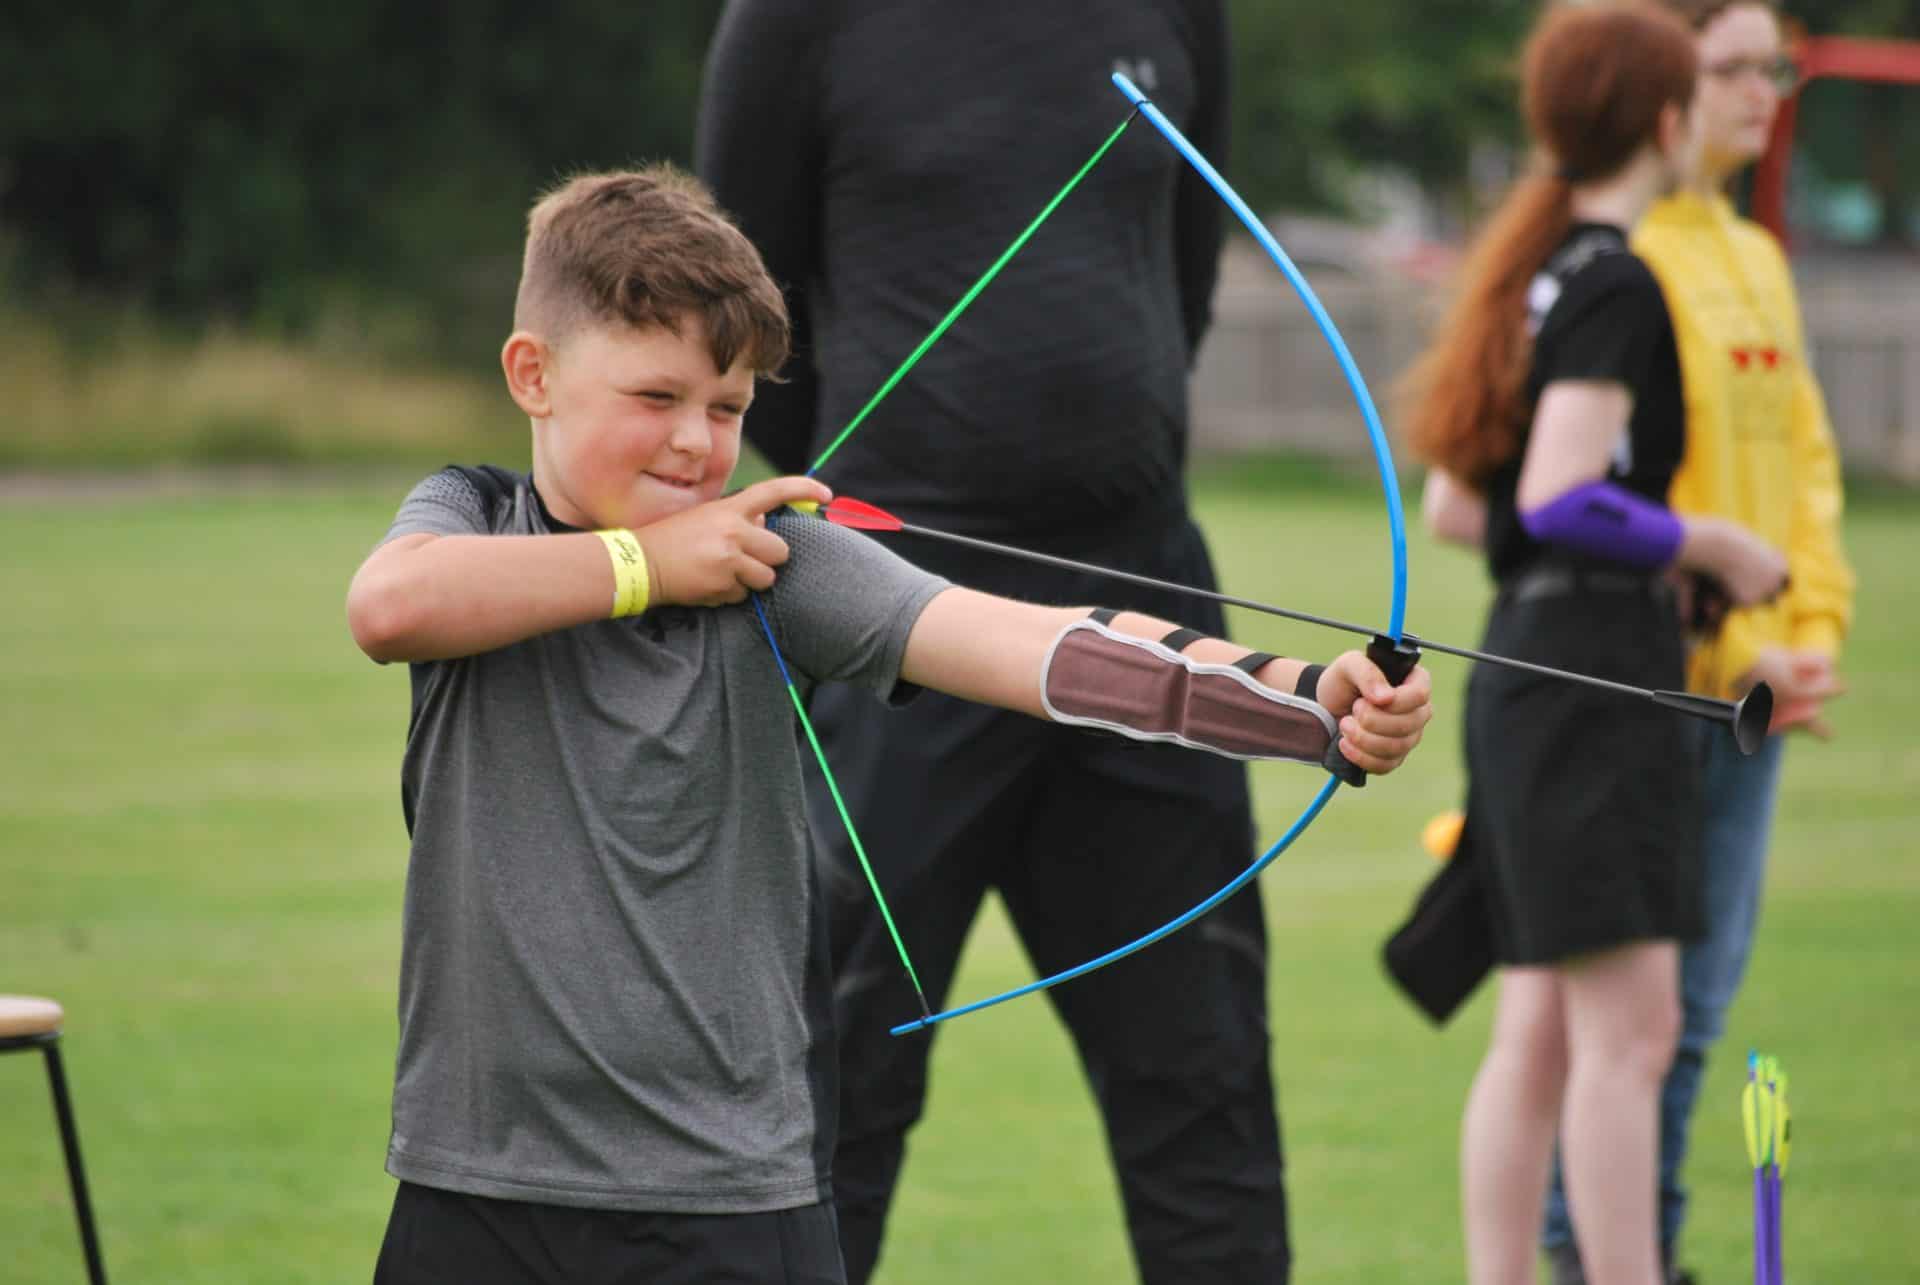 Arrows soft archery kit shot by boy